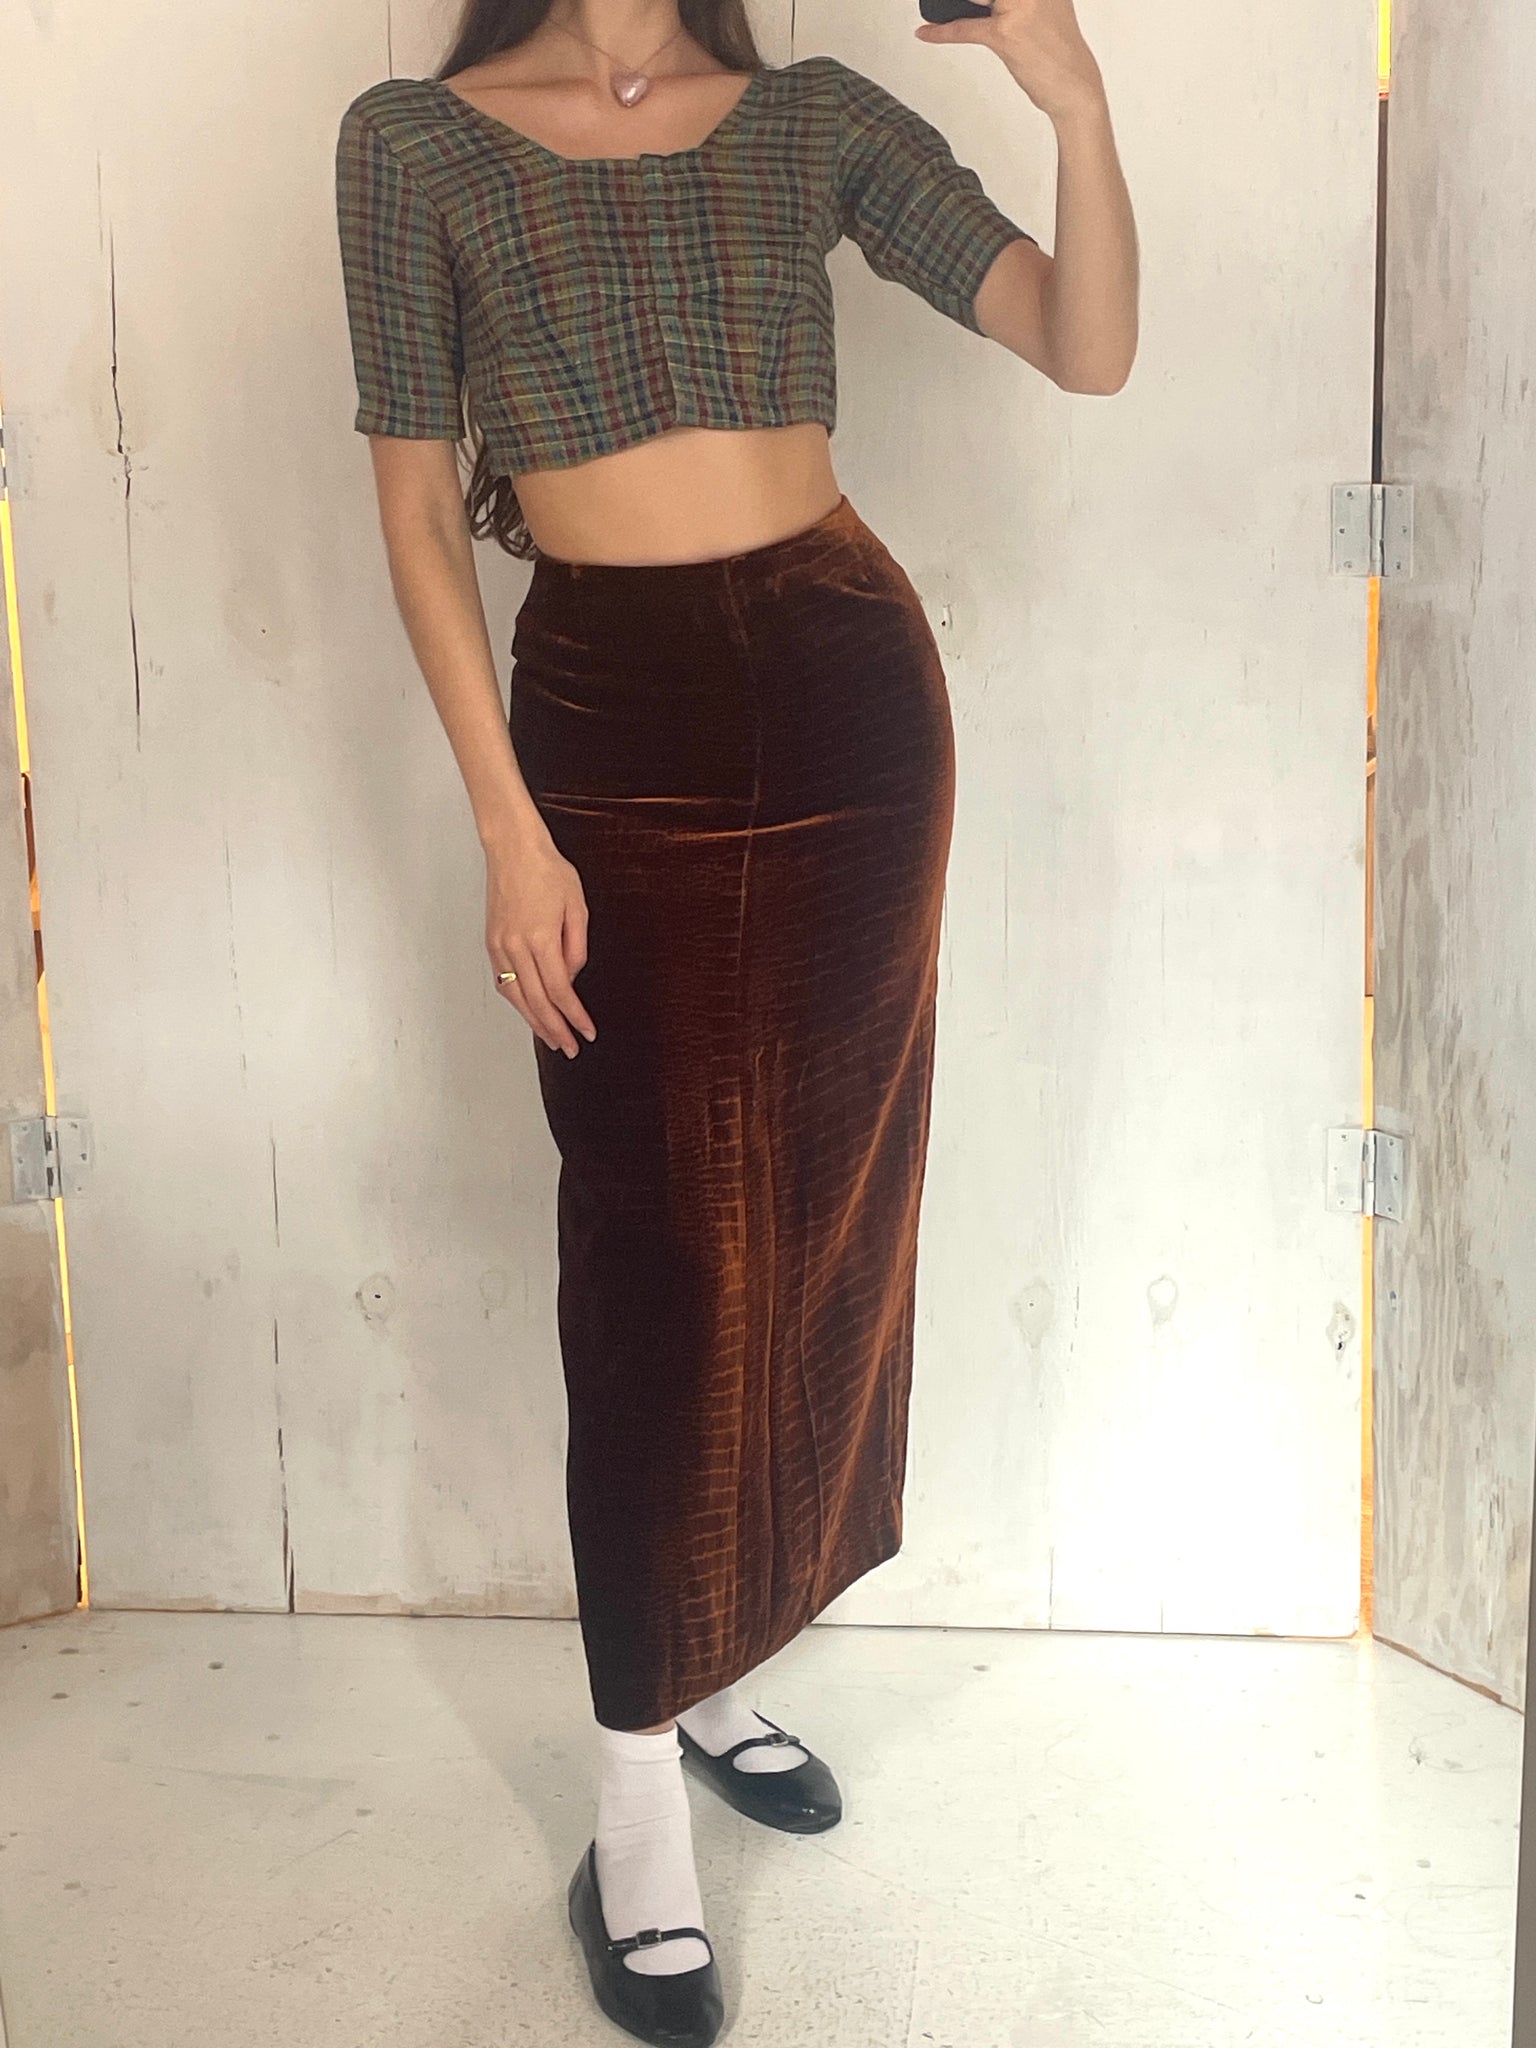 Anna Sui F/W 1996 velvet skirt